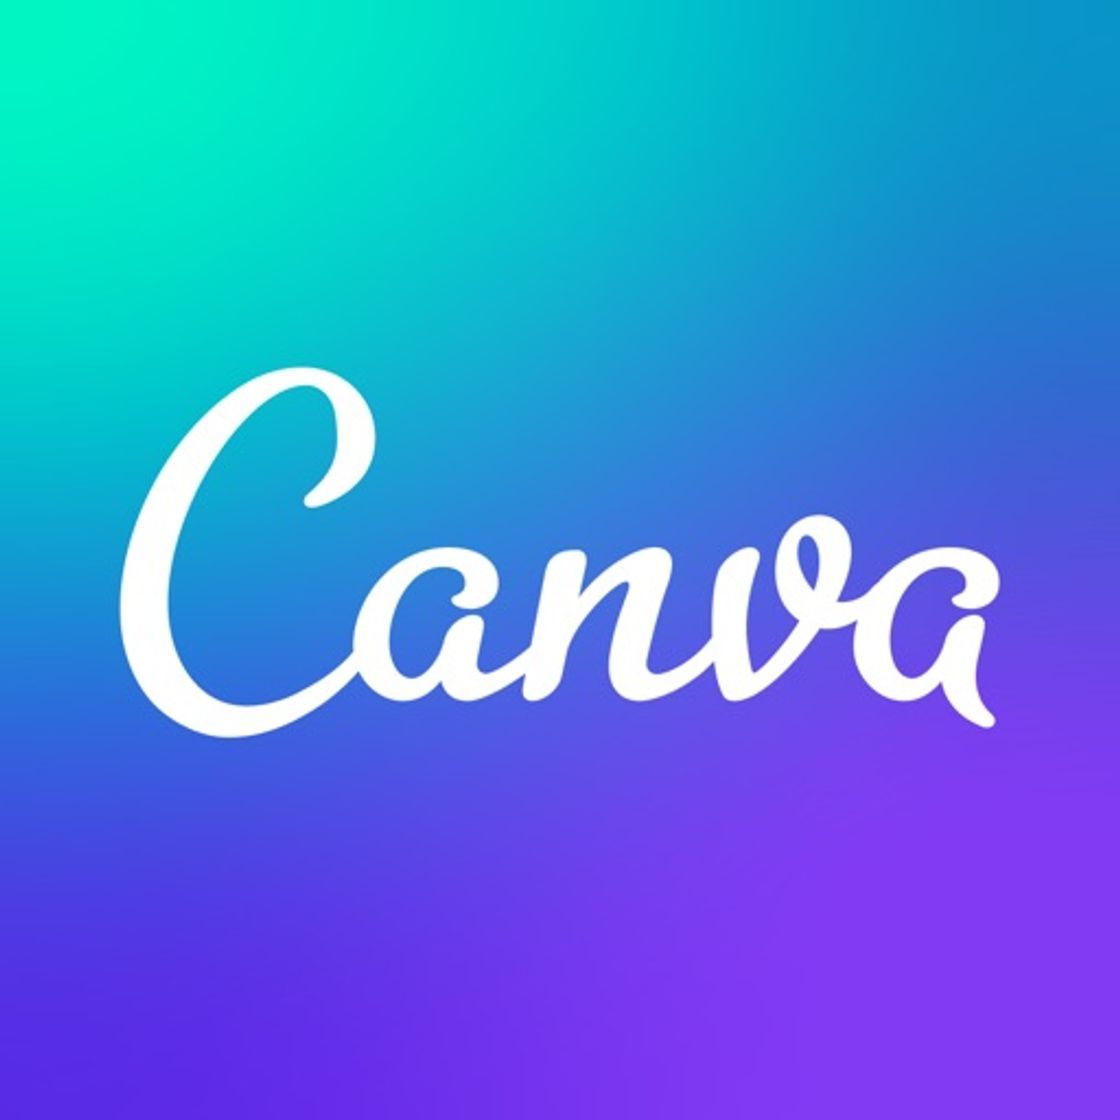 Canva: Graphic Design & Video